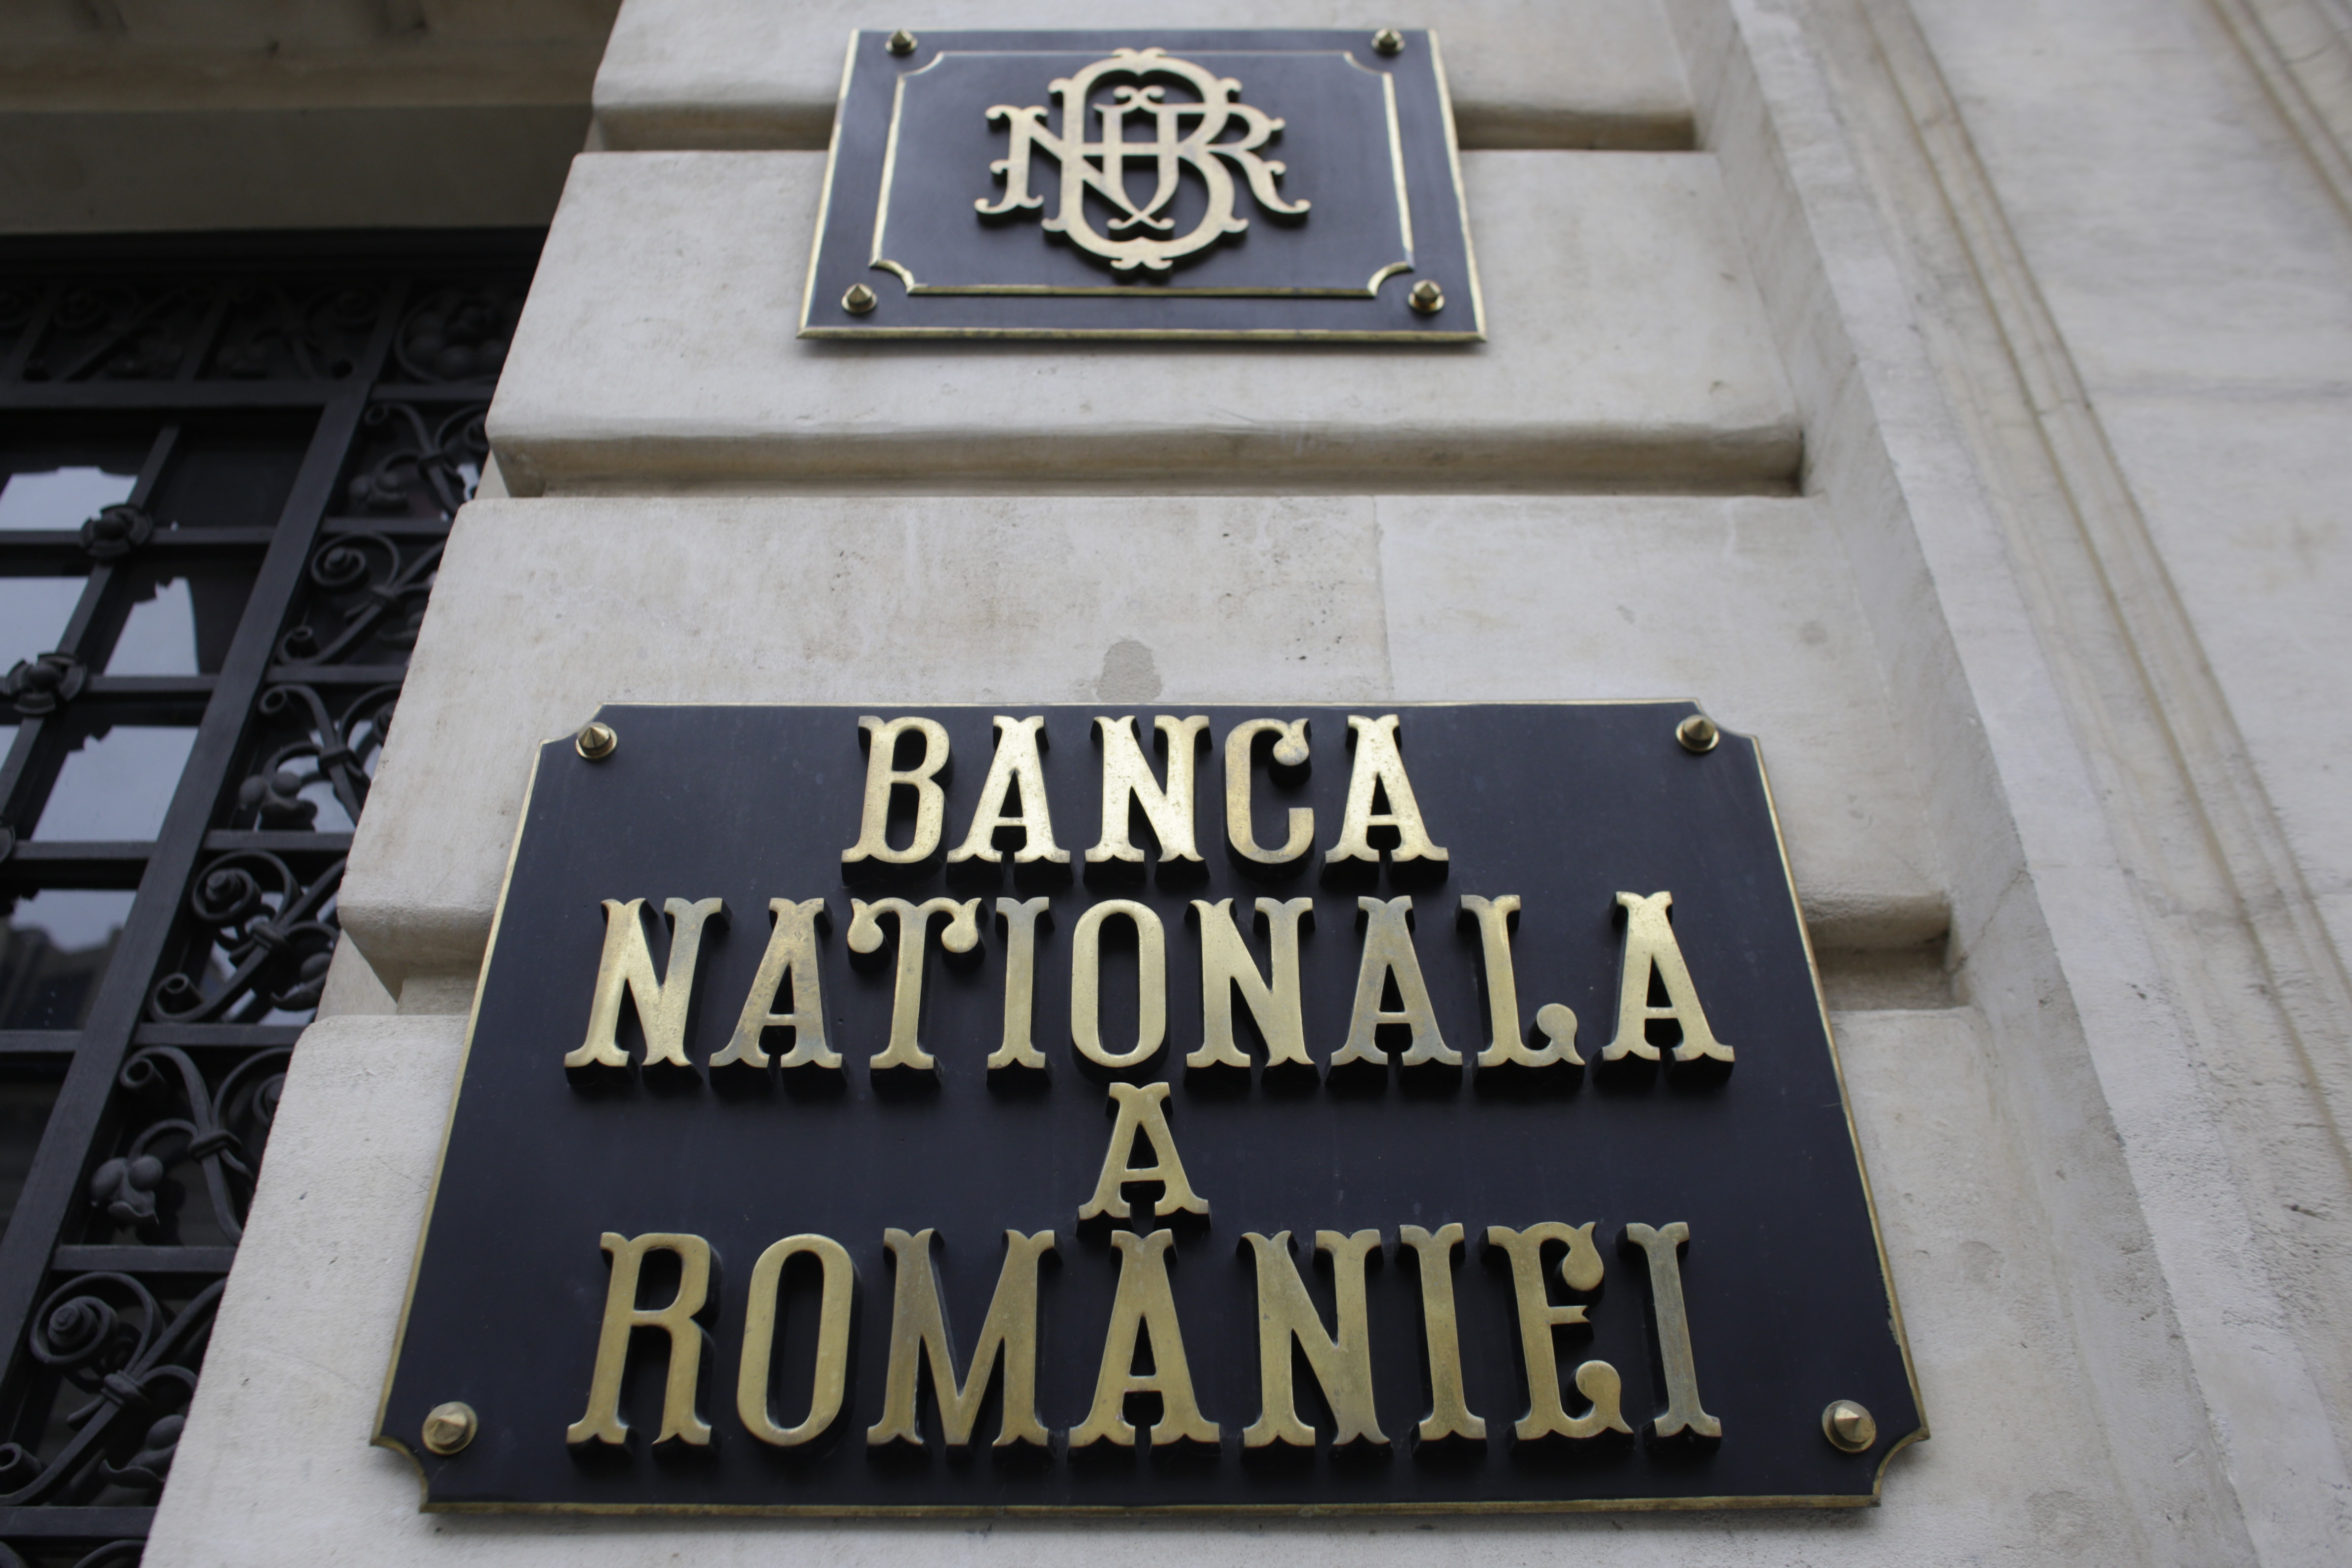 Banca Națională a României acuză PSD că folosește abuziv imaginea sa în campania electorală